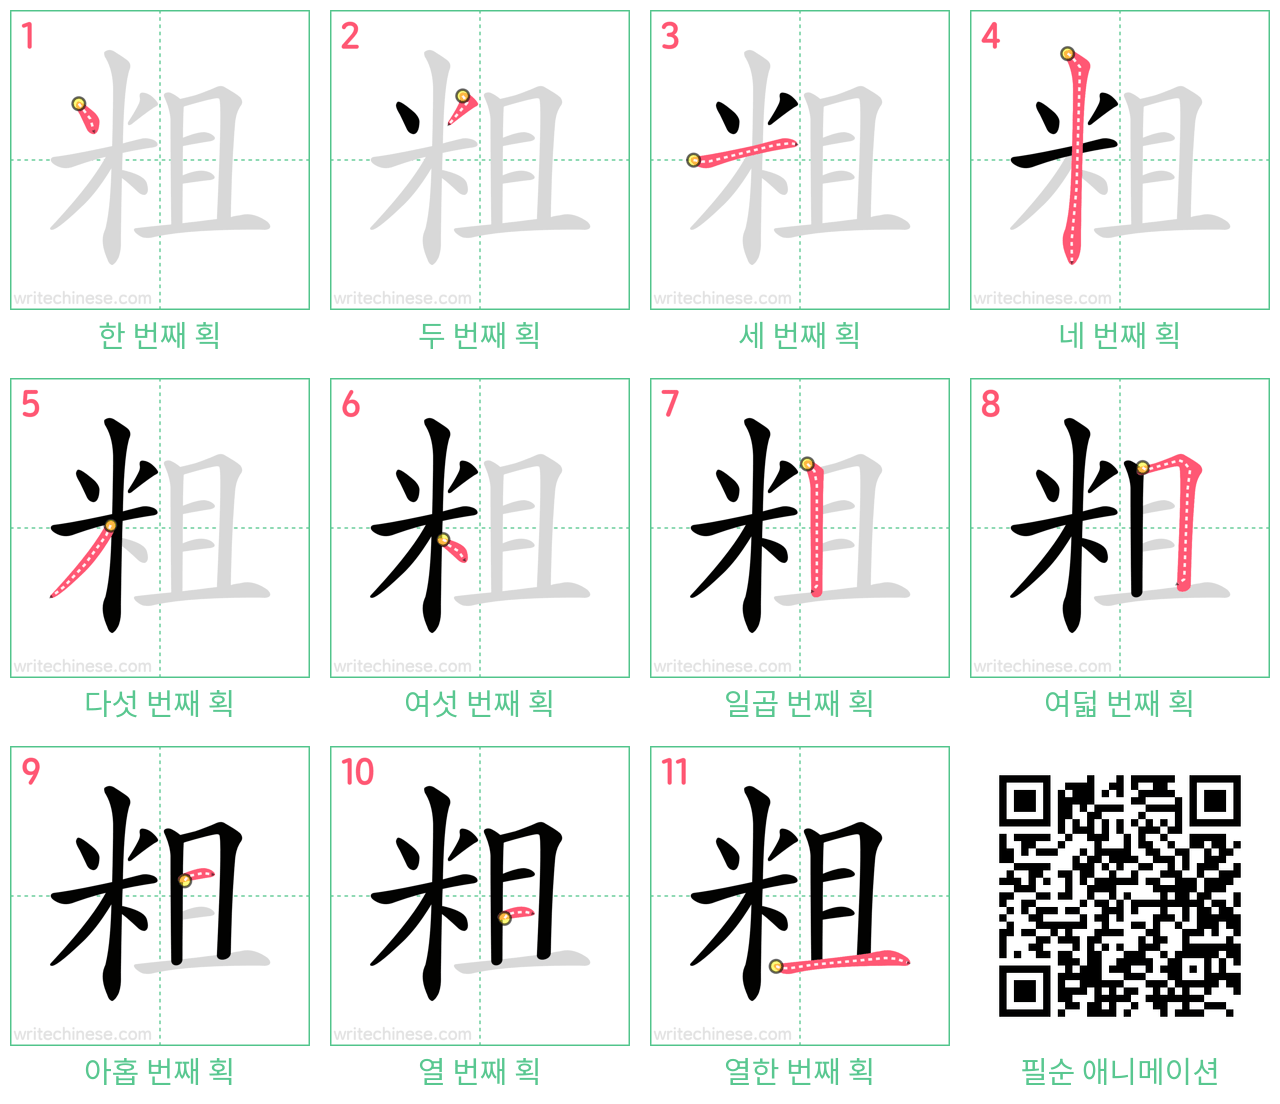 粗 step-by-step stroke order diagrams